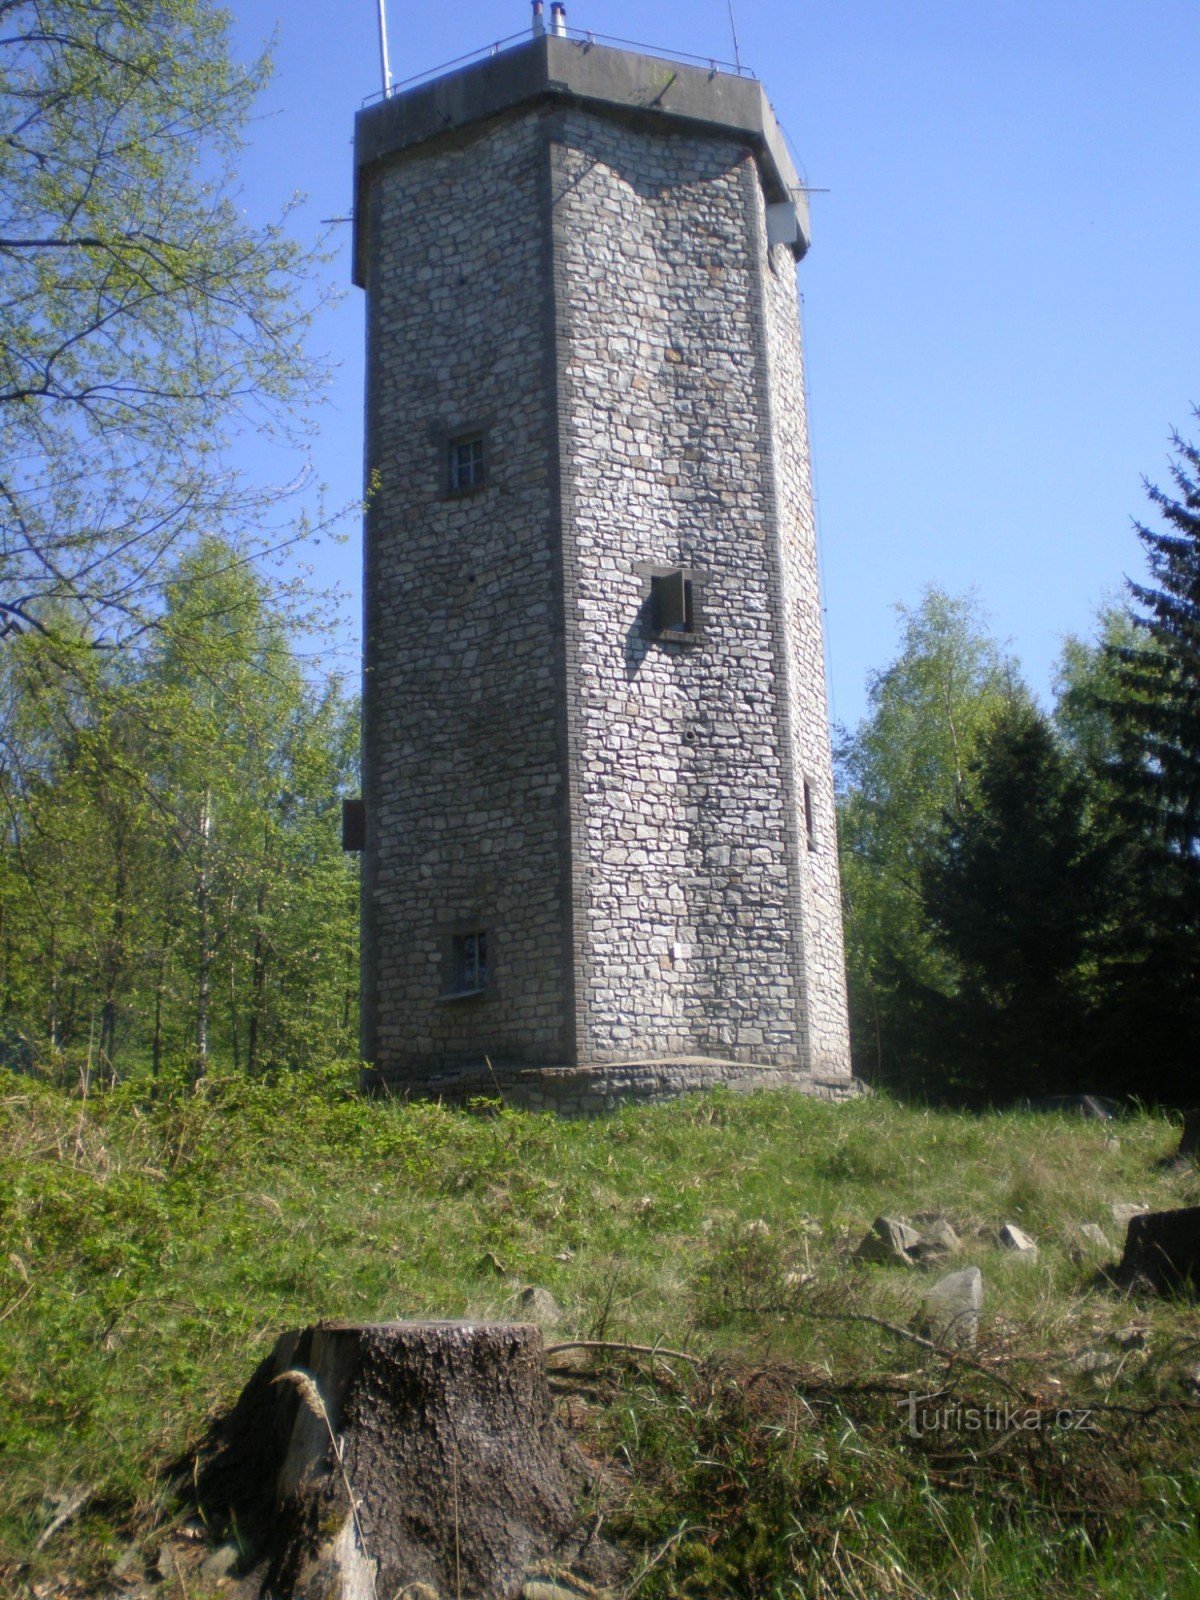 Studený vrch (660m), wieża widokowa